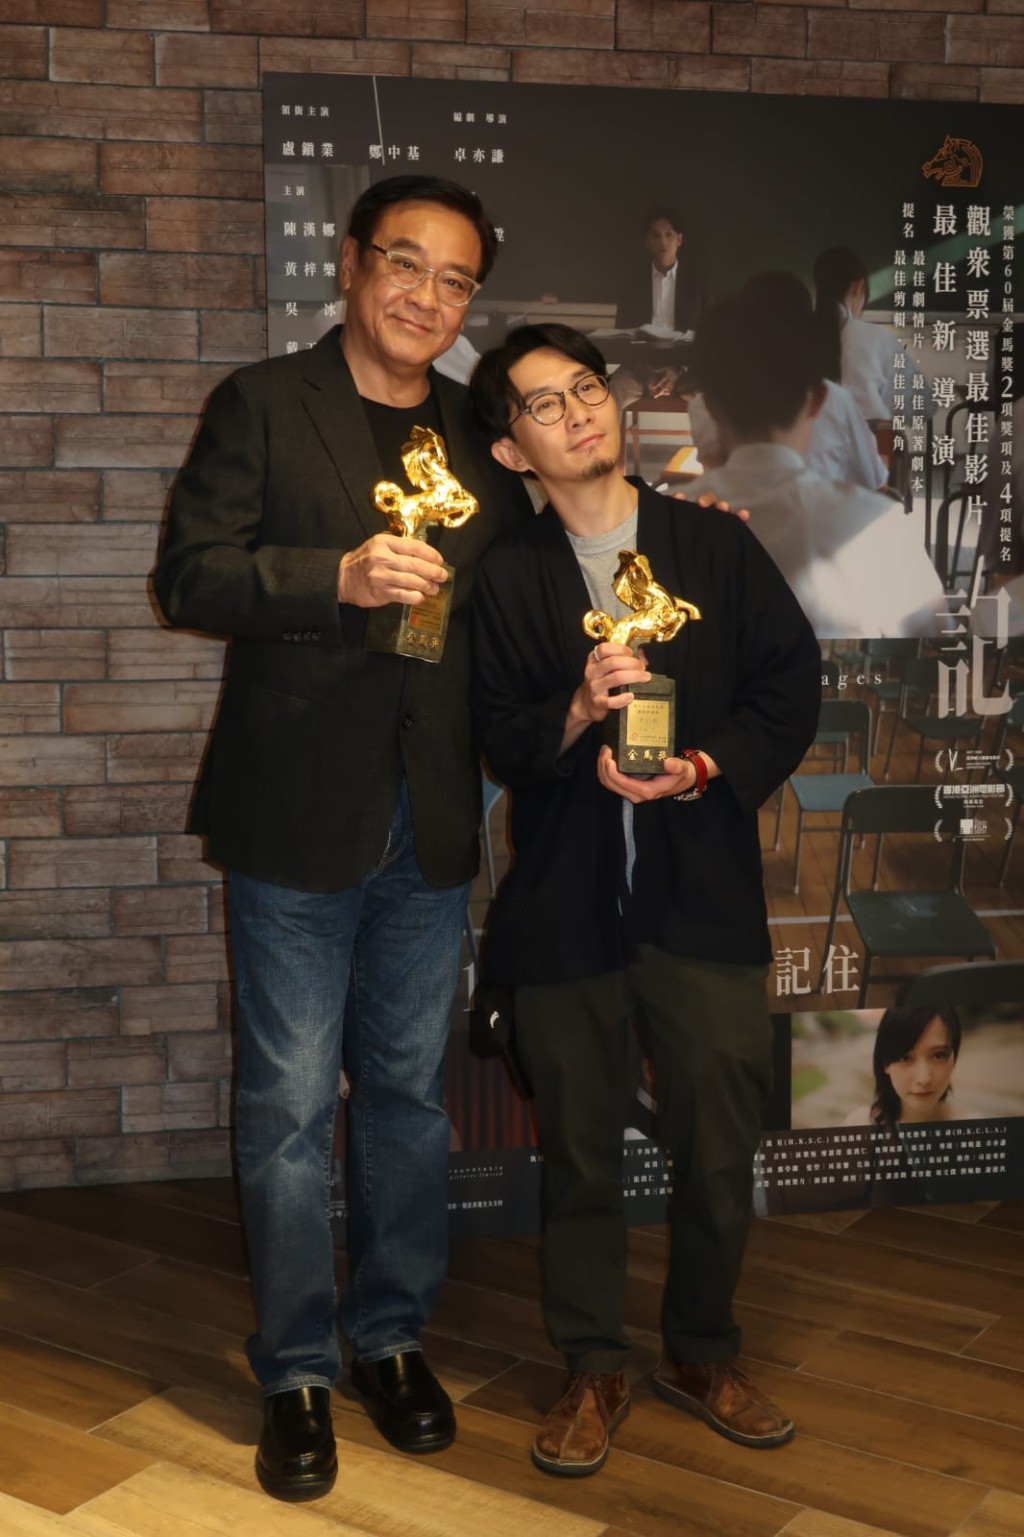 監製爾冬陞表示今次是其擔任監製的第三位導演奪新導演獎，因此很有滿足感。